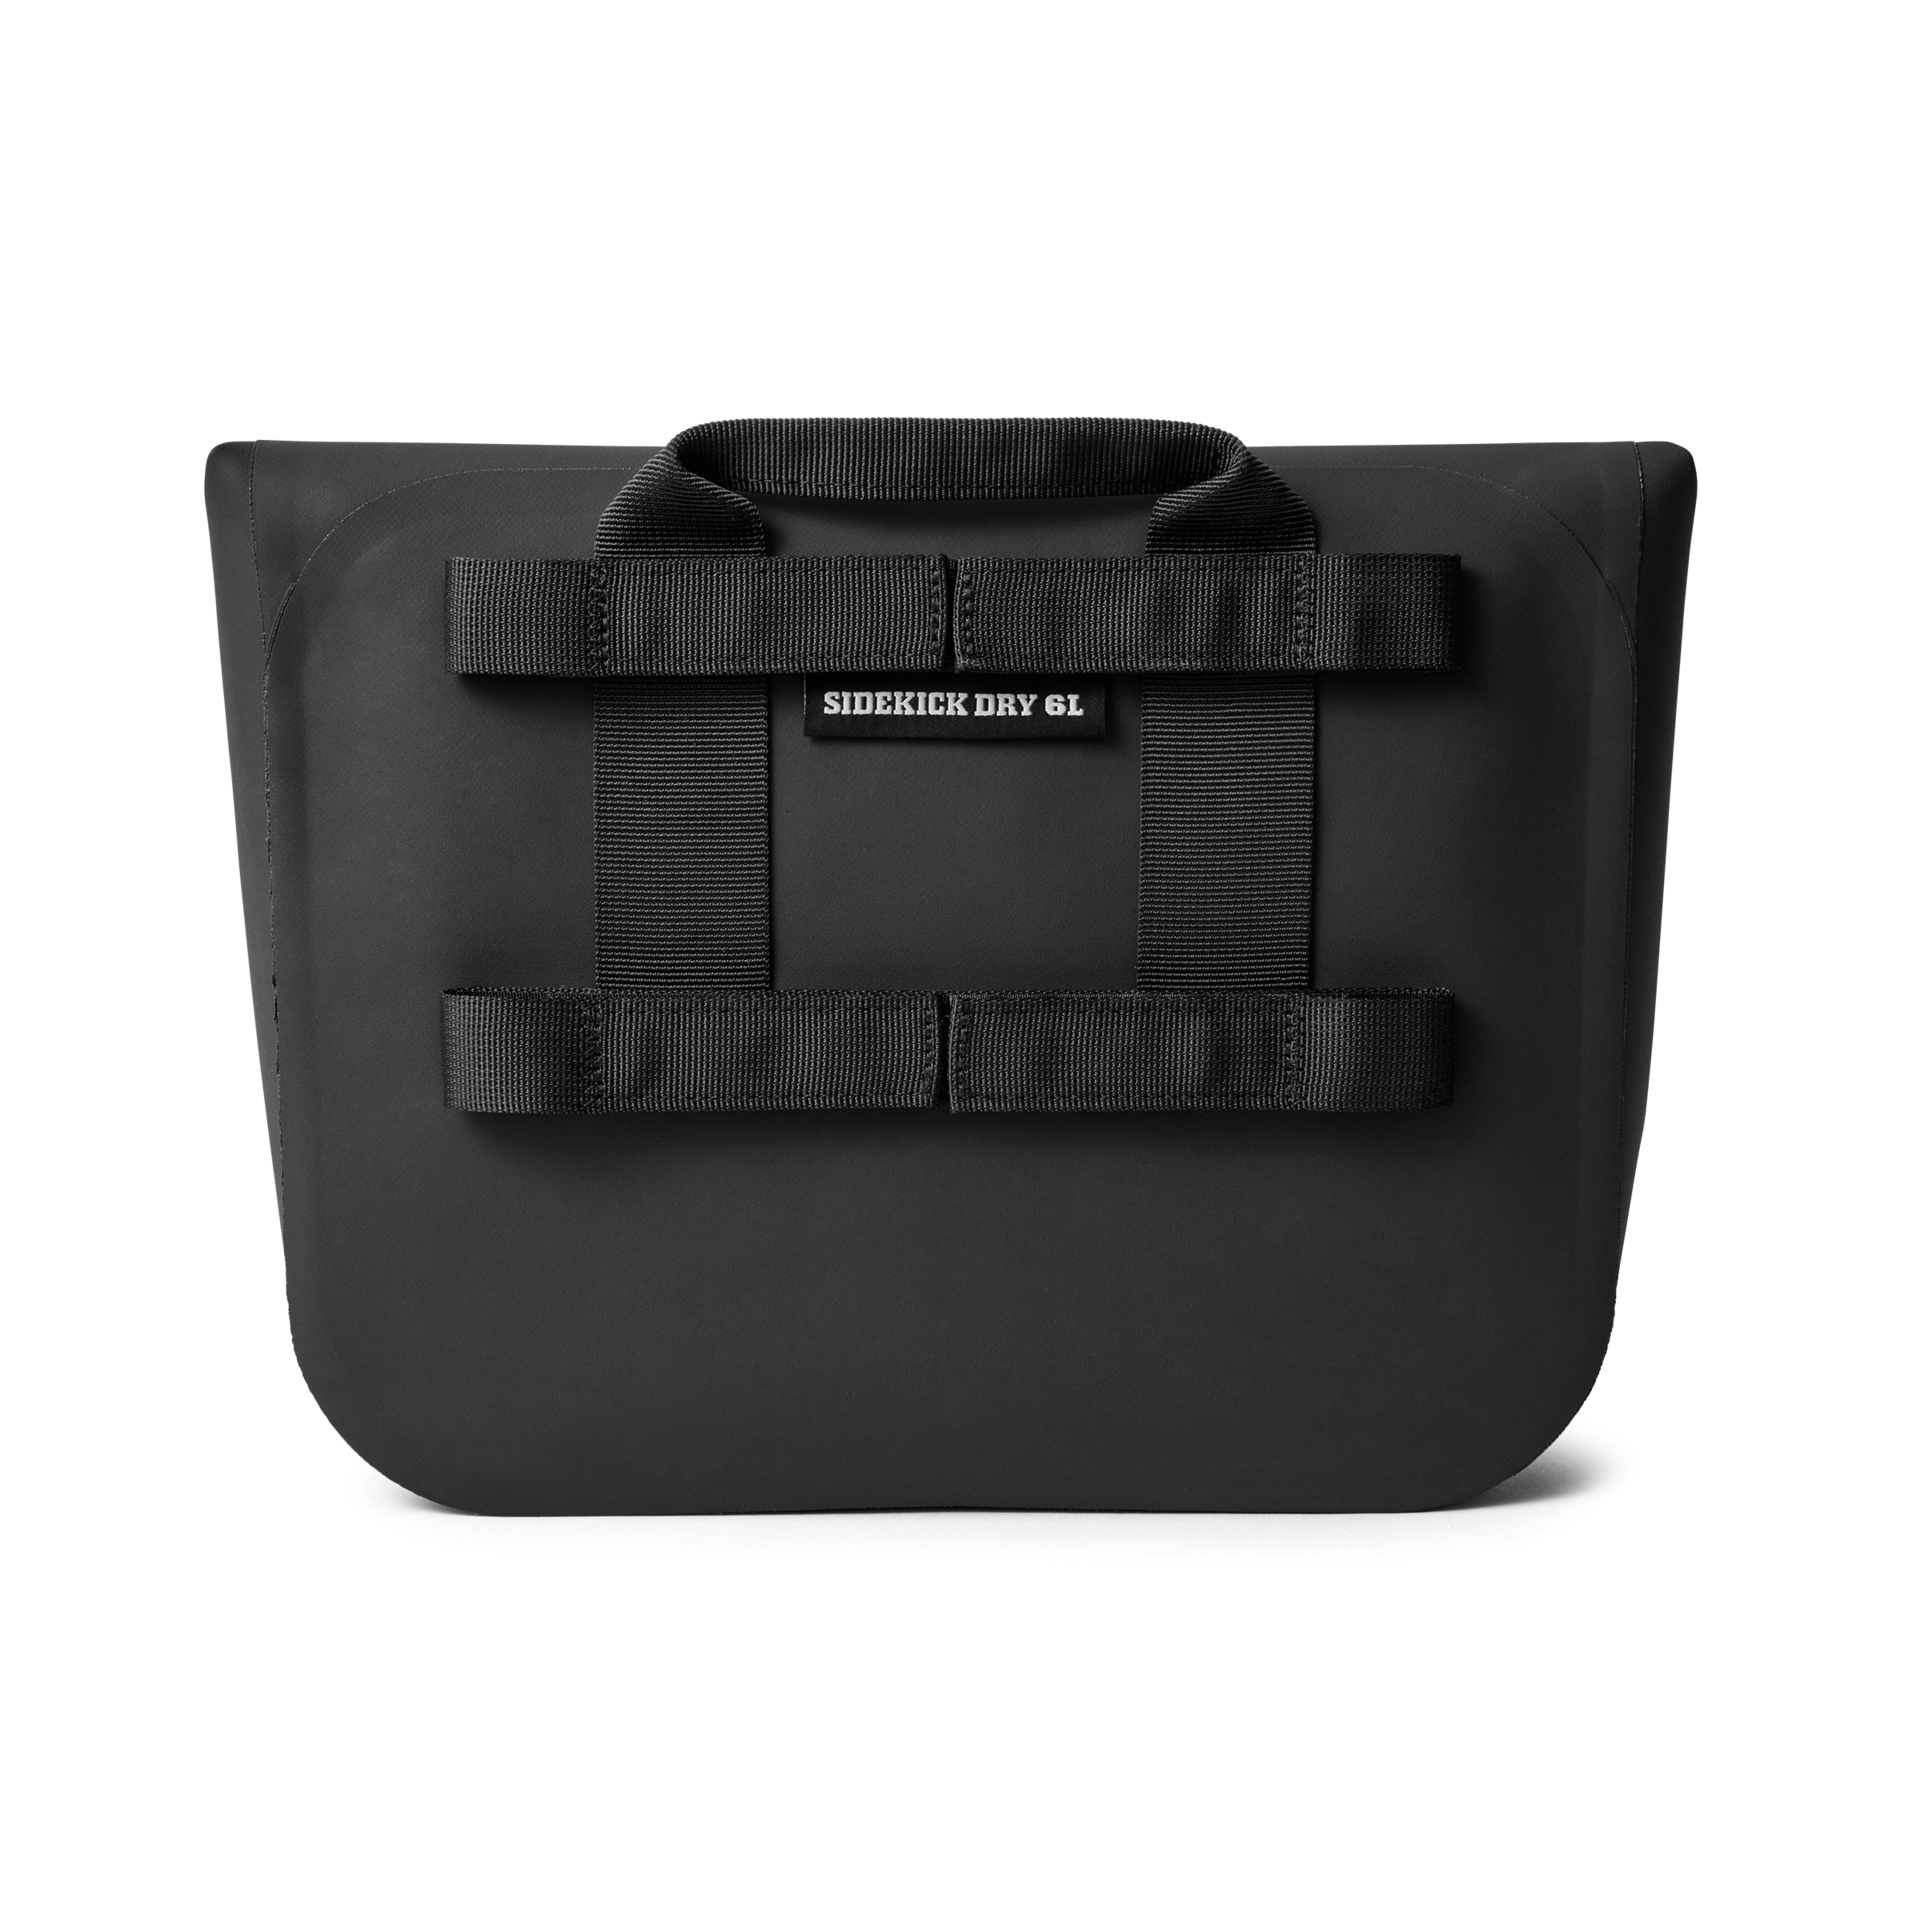 Sidekick Dry Gear Case 6L - Black